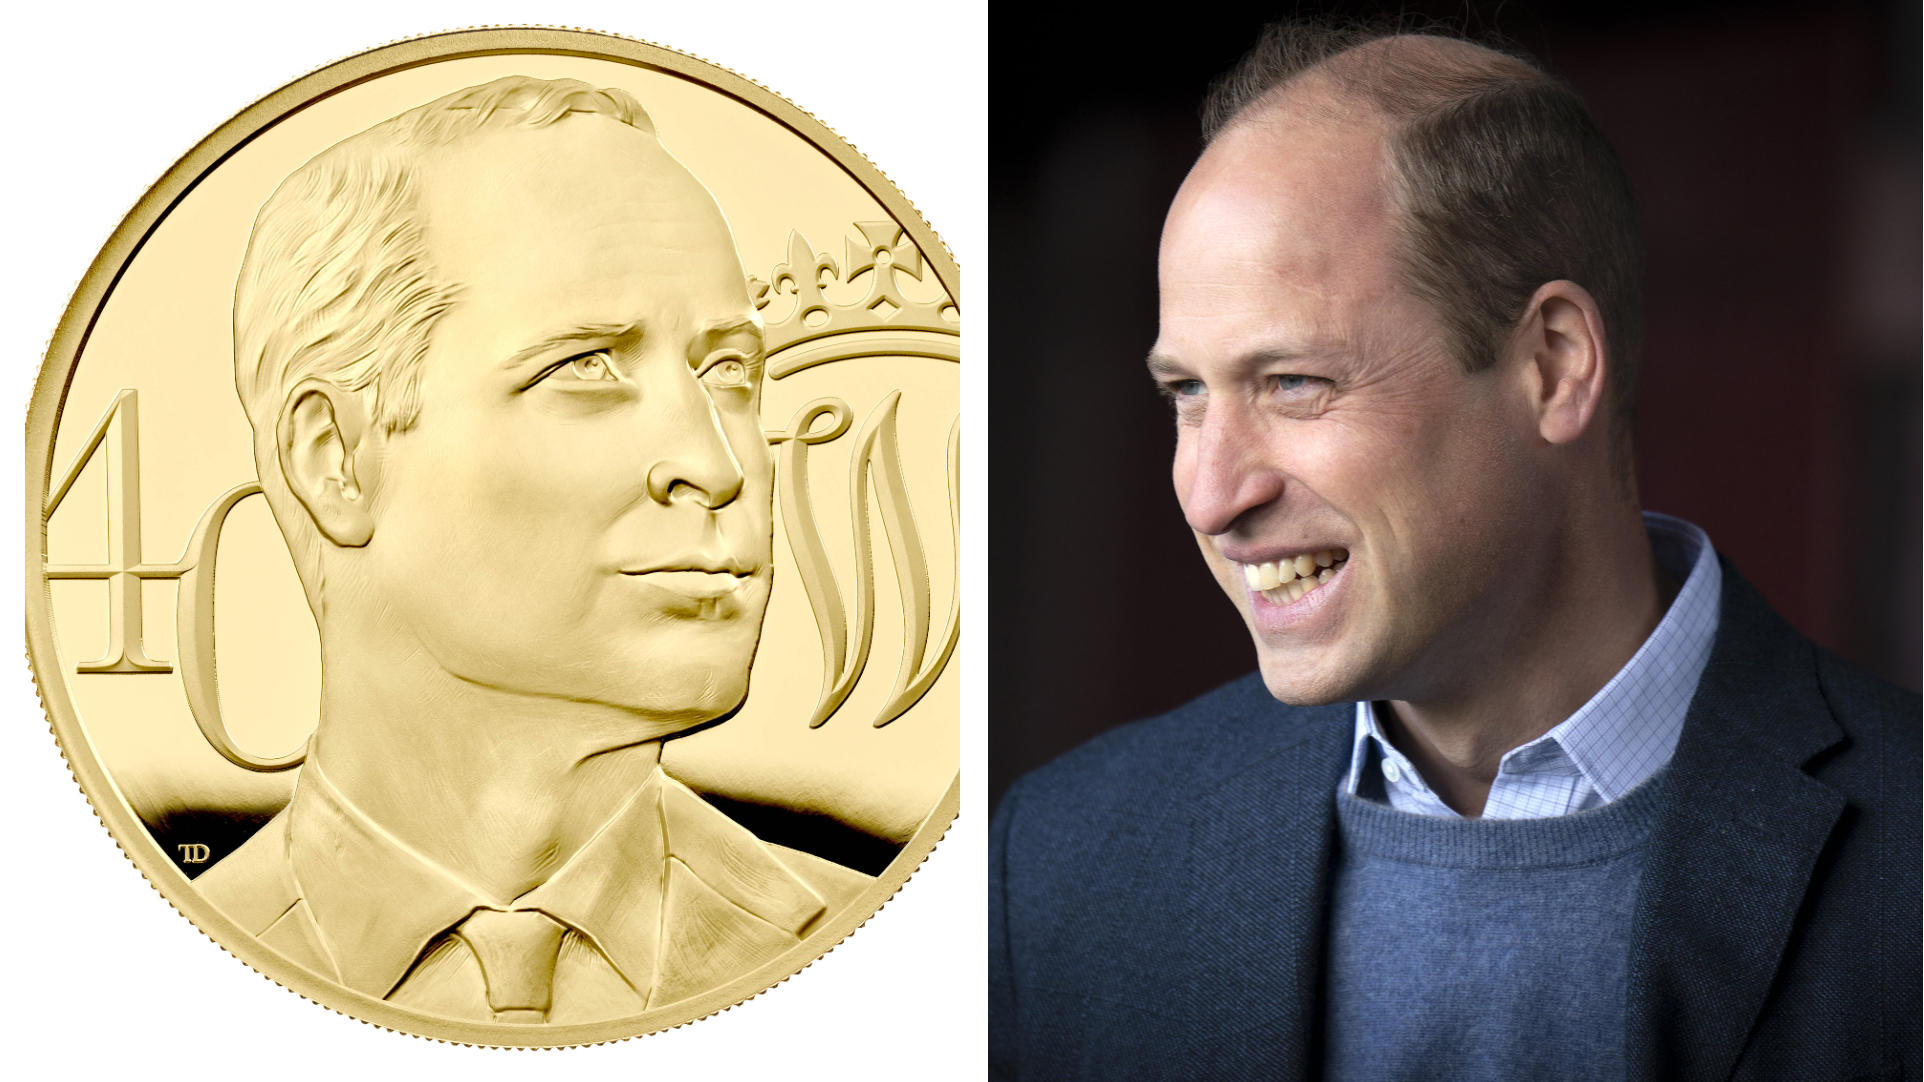 Finde den Fehler: In Sachen Haare wurde bei dem Münz-Porträt von Prinz William zu seinem 40. Geburtstag wohl etwas nachgeholfen.